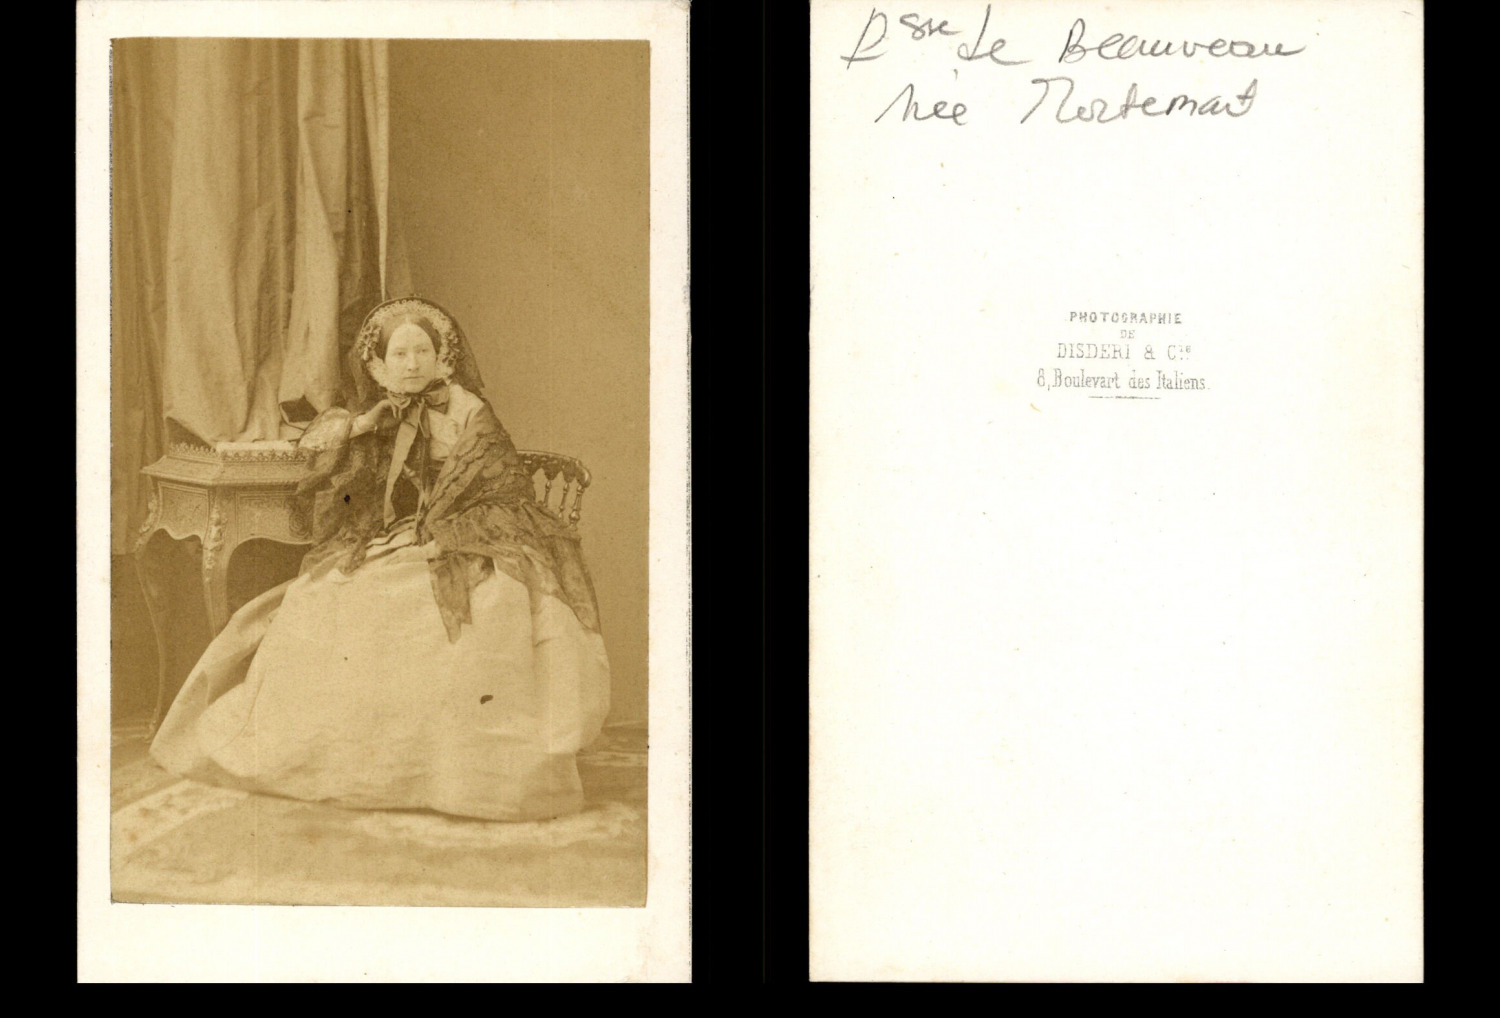 Disderi, Paris, Princess of Beauveau née Mortemart Vintage Albumen Print CDV.